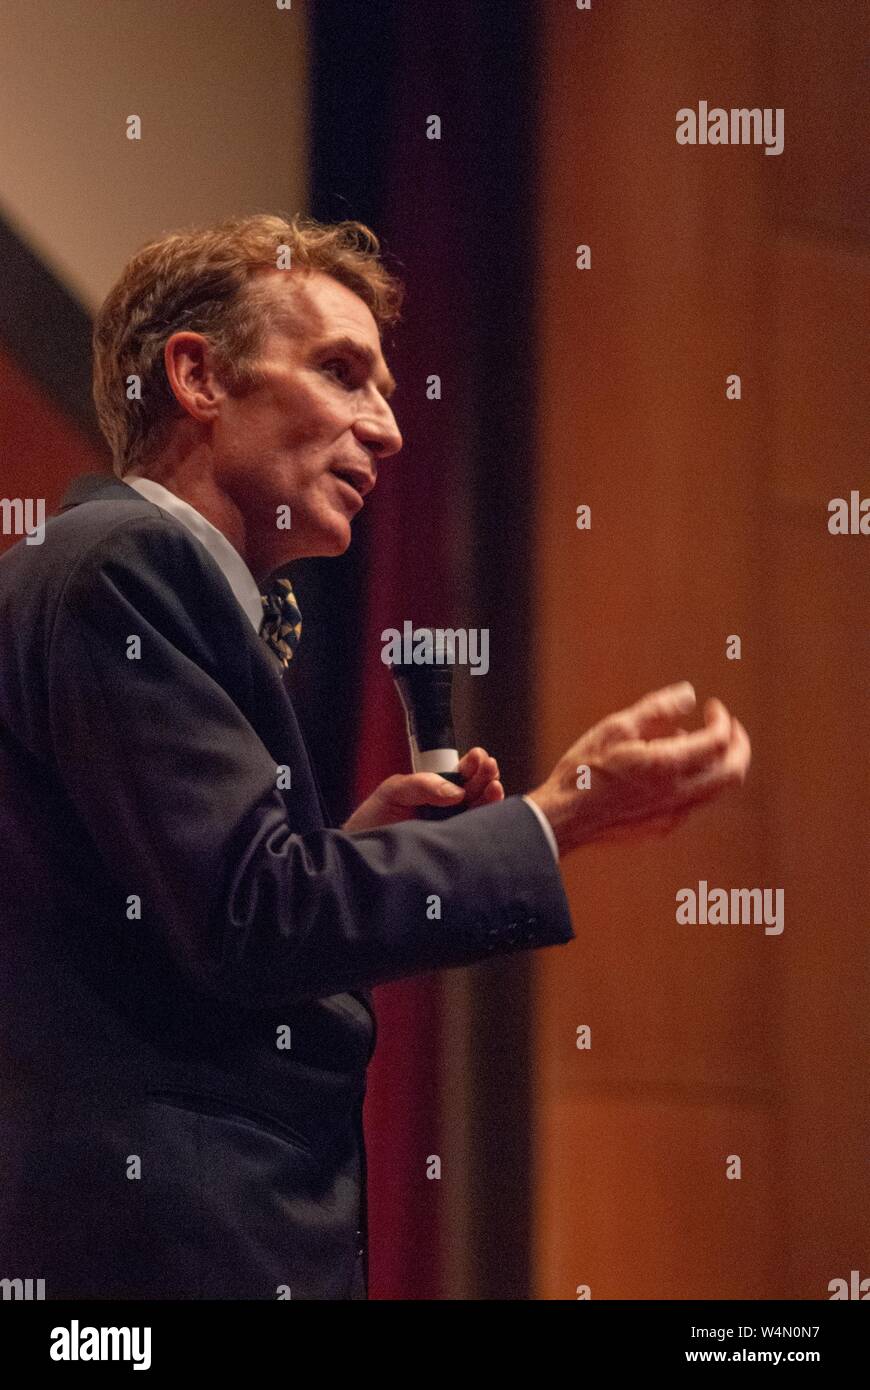 Basso profilo angolo di inquadratura della scienza communicator Bill Nye, parlando durante un Milton S Eisenhower simposio presso la Johns Hopkins University, Baltimora, Maryland, Ottobre 23, 2007. Dall'Homewood raccolta di fotografie. () Foto Stock